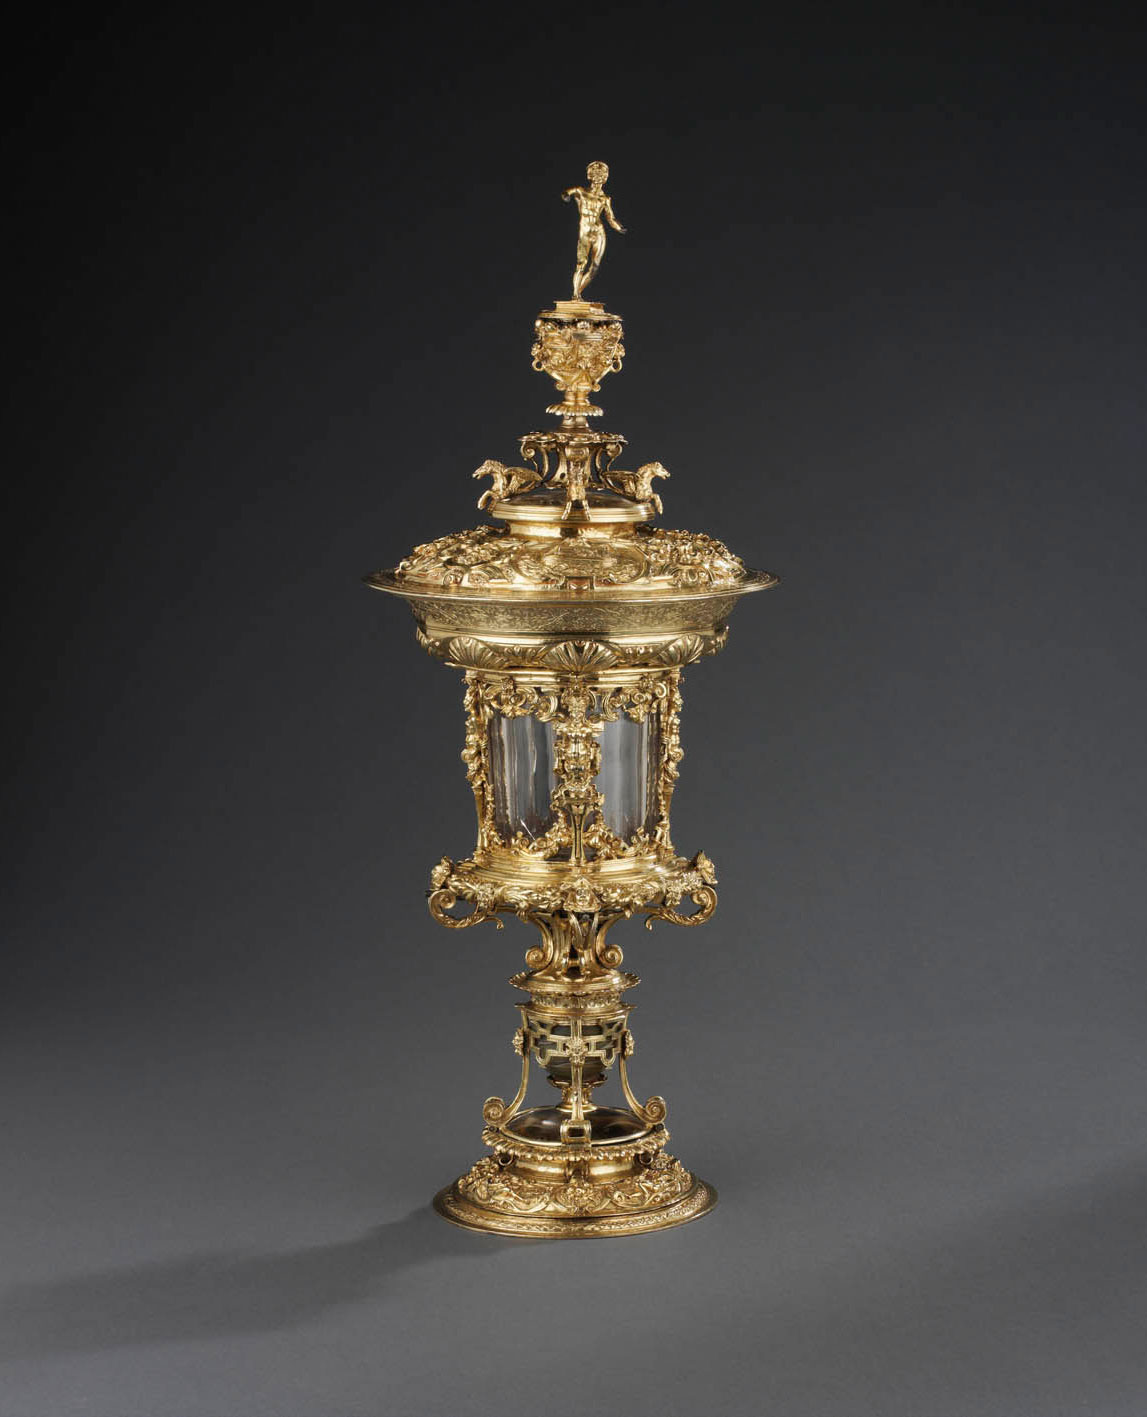 Der Renaissance-Pokal aus der Londoner Schroder Collection